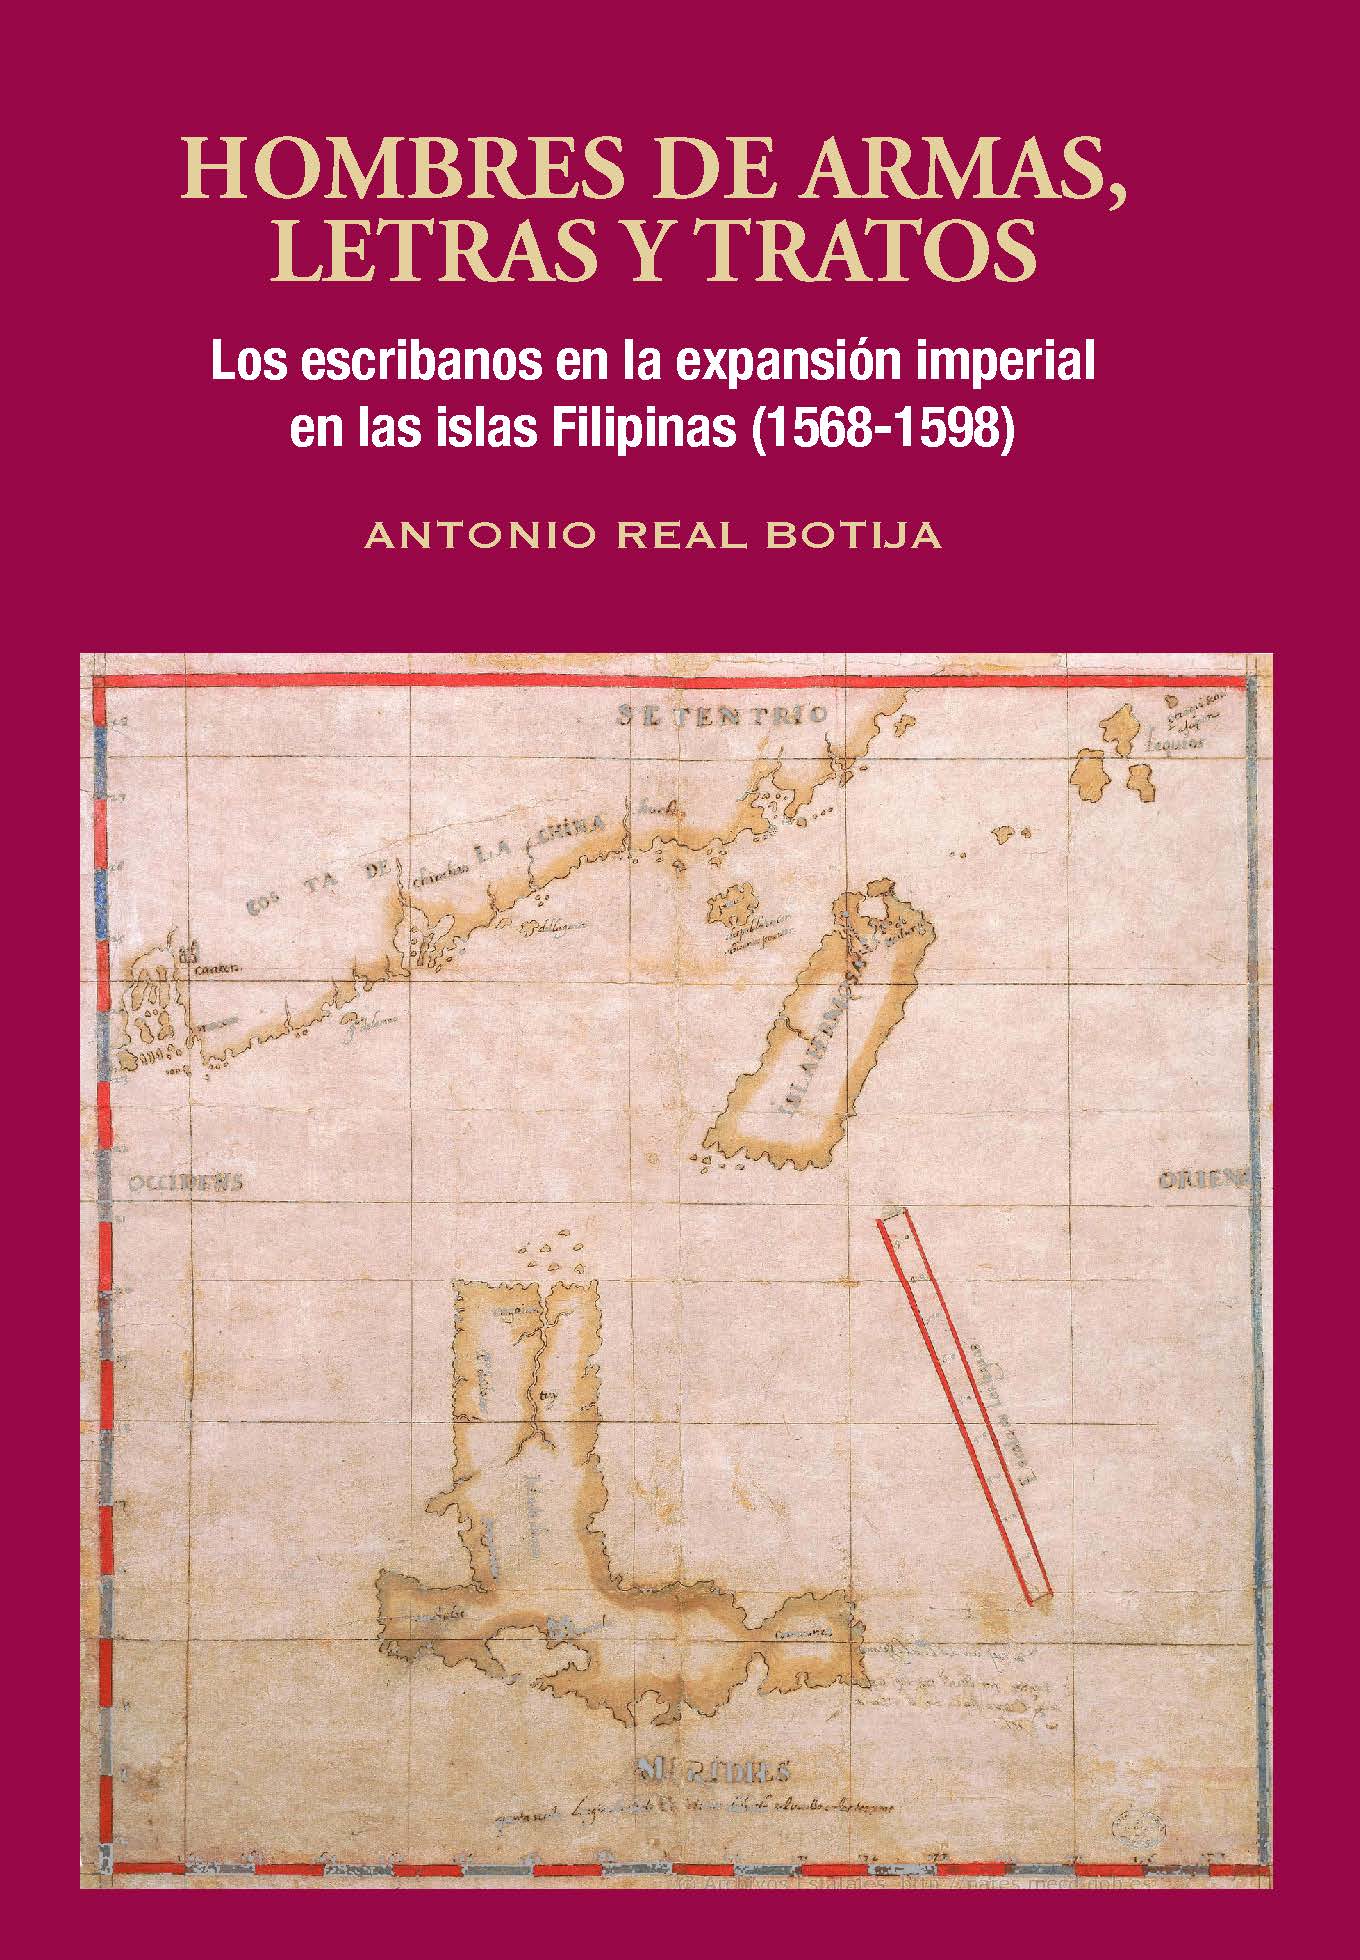 Hombres de armas, letras y tratos. Los escribanos en la expansión imperial en las islas Filipinas (1568-1598)